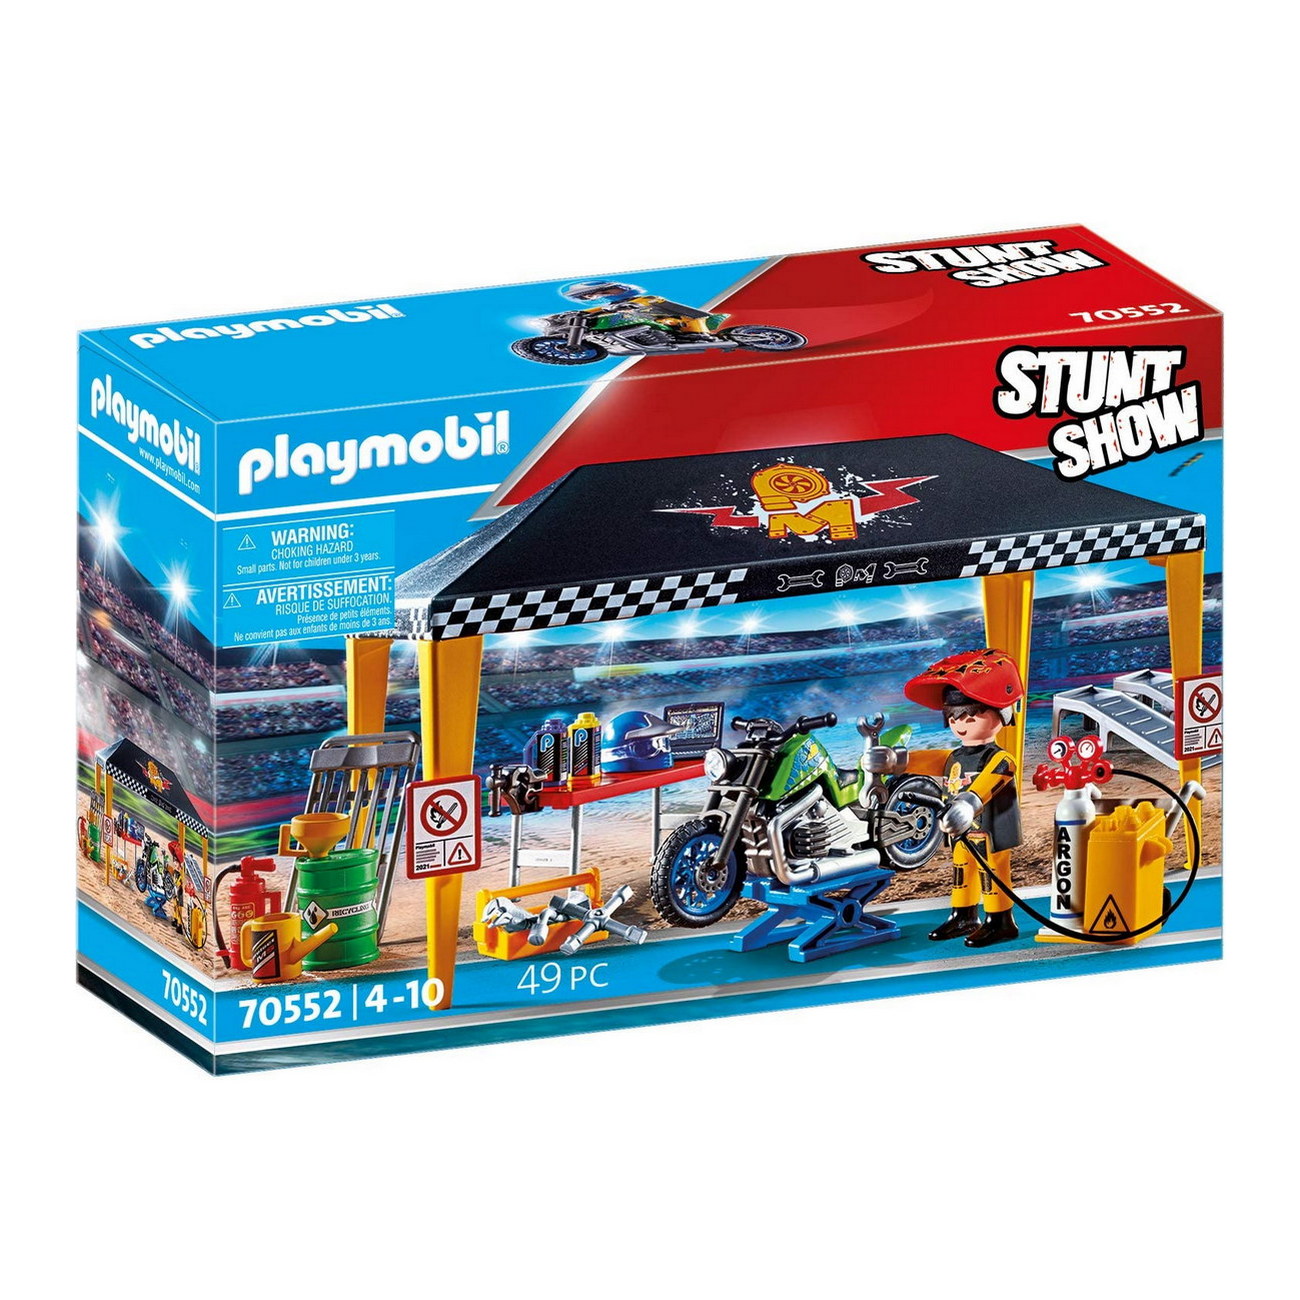 Playmobil 70552 - Stuntshow Werkstattzelt - Stunt Show